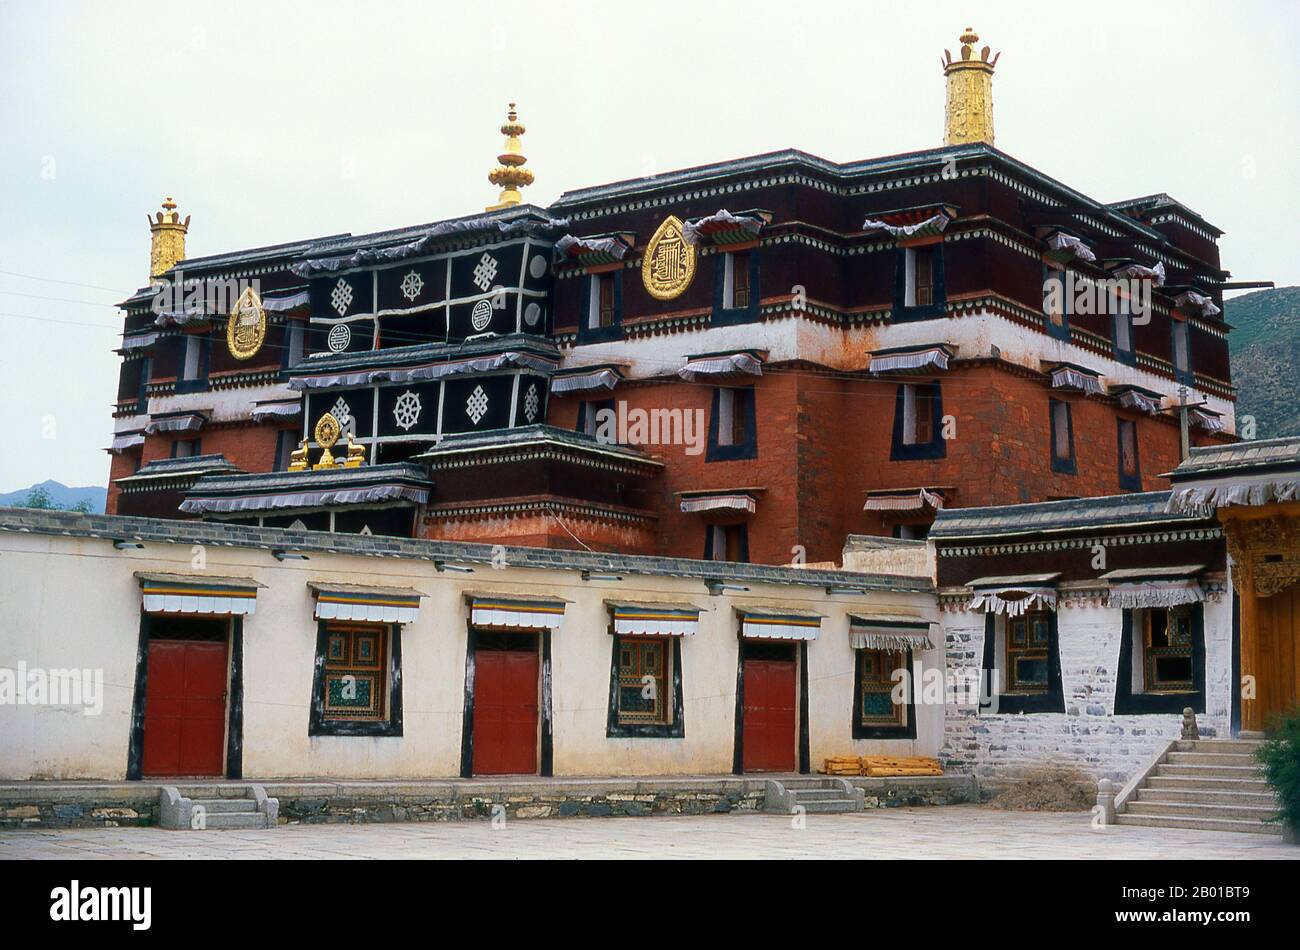 China: Ein äußeres Gebäude im Labrang Kloster, Xiahe, Provinz Gansu. Labrang Kloster ist eines der sechs großen Klöster der Gelug (Gelber Hut) Schule des tibetischen Buddhismus. Sein formaler Name ist Gandan Shaydrup Dargay Tashi Gyaysu Khyilway Ling, allgemein bekannt als Labrang Tashi khyil oder einfach Labrang. Das Kloster wurde 1709 von der ersten Jamyang Zhaypa, Ngawang Tsondru, gegründet. Es ist die wichtigste Klosterstadt des tibetischen Buddhismus außerhalb der tibetischen Autonomen Region. Stockfoto